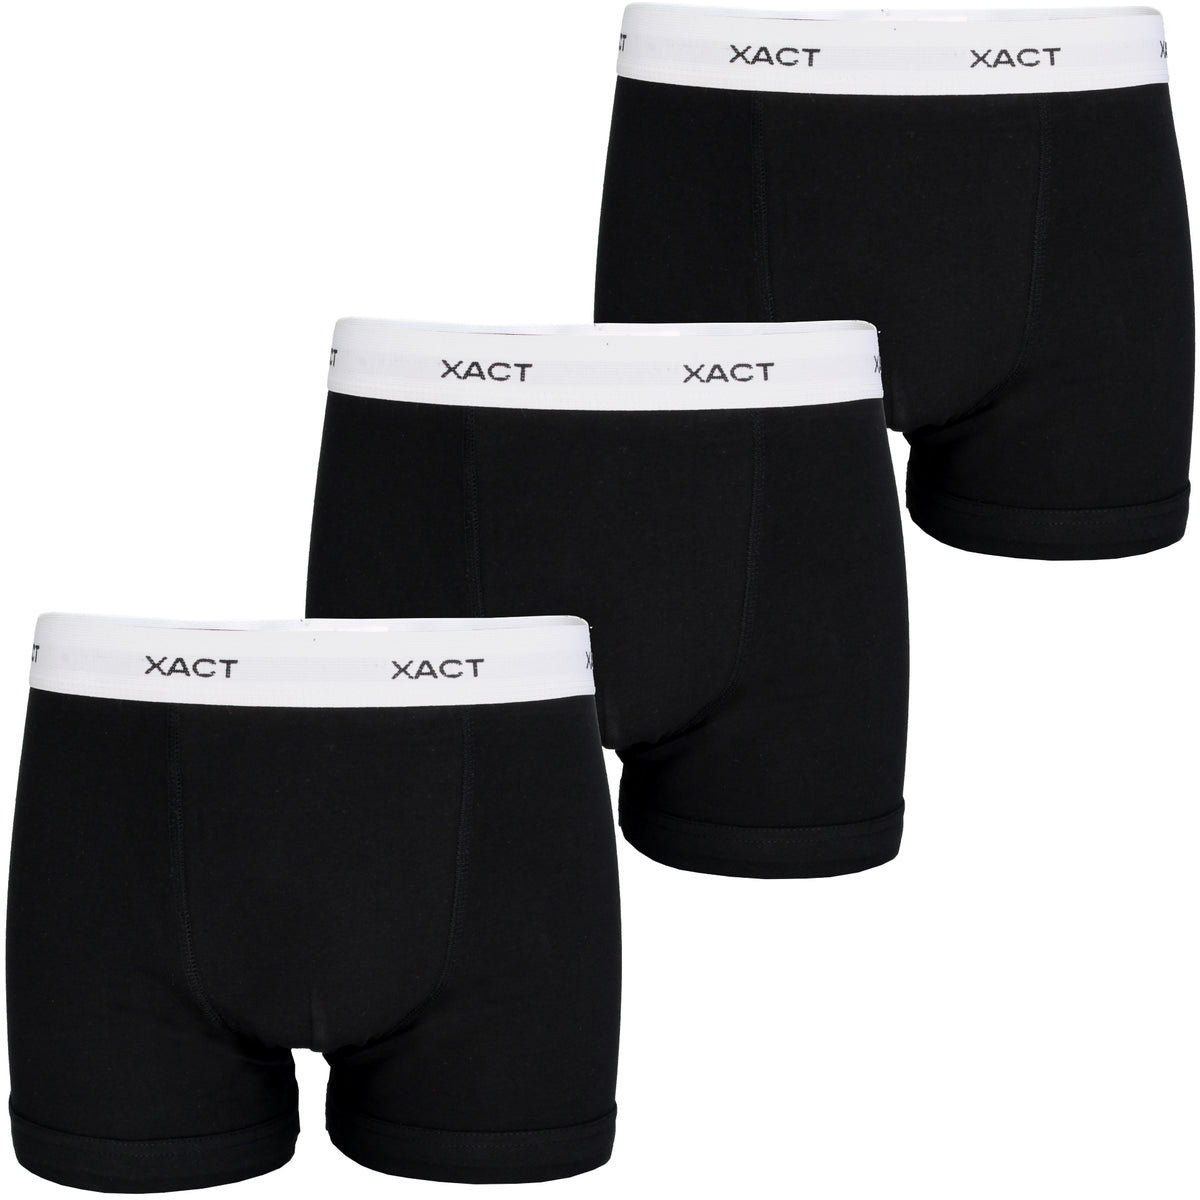 Xact Mens Cotton Stretch Boxer Shorts/ Trunks (3 Pack), 01, XU1061, Black